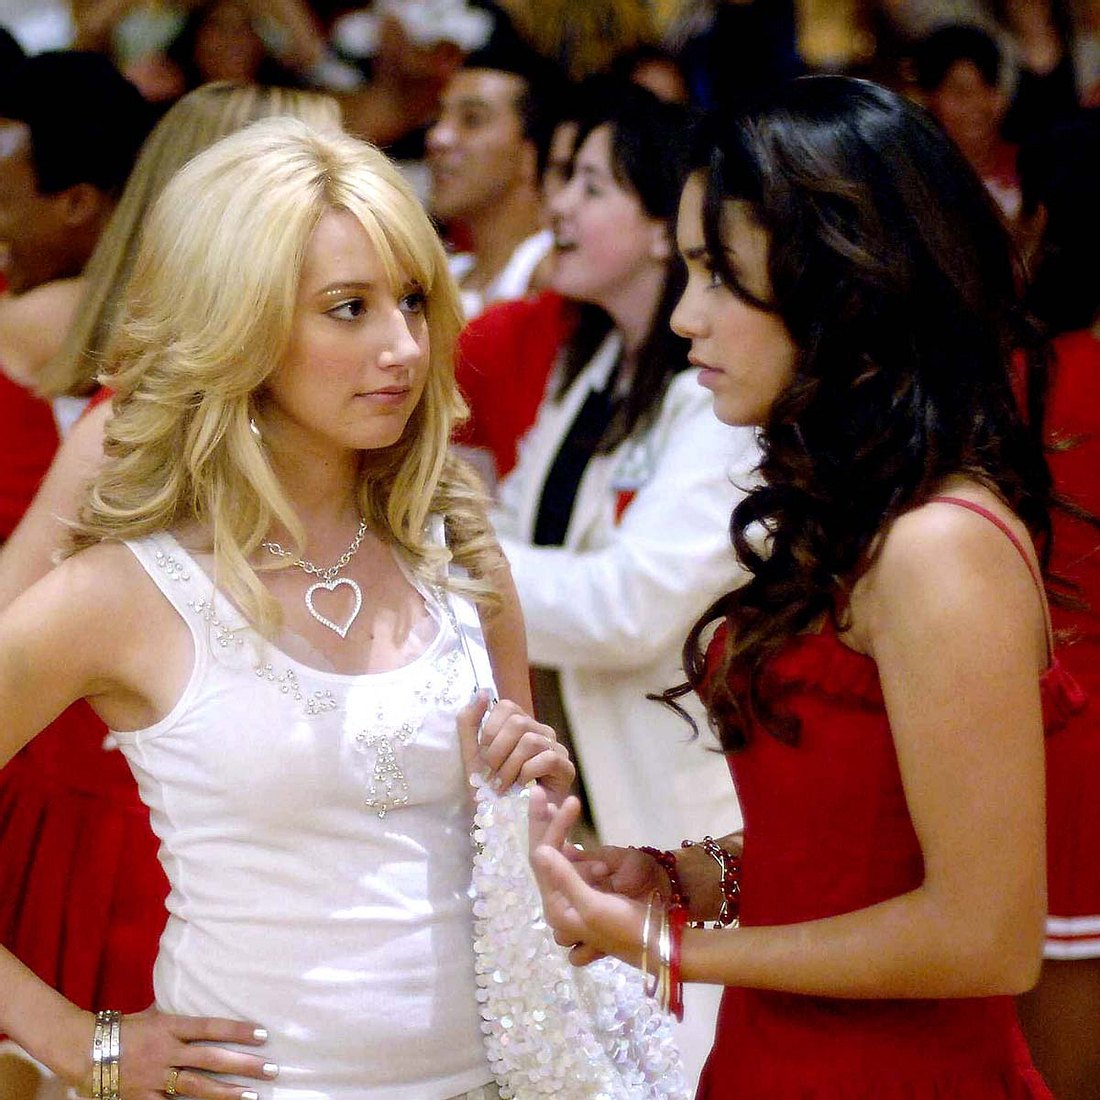 Sharpay aus “High School Musical” ist nicht böse: Sie ist keine Diva